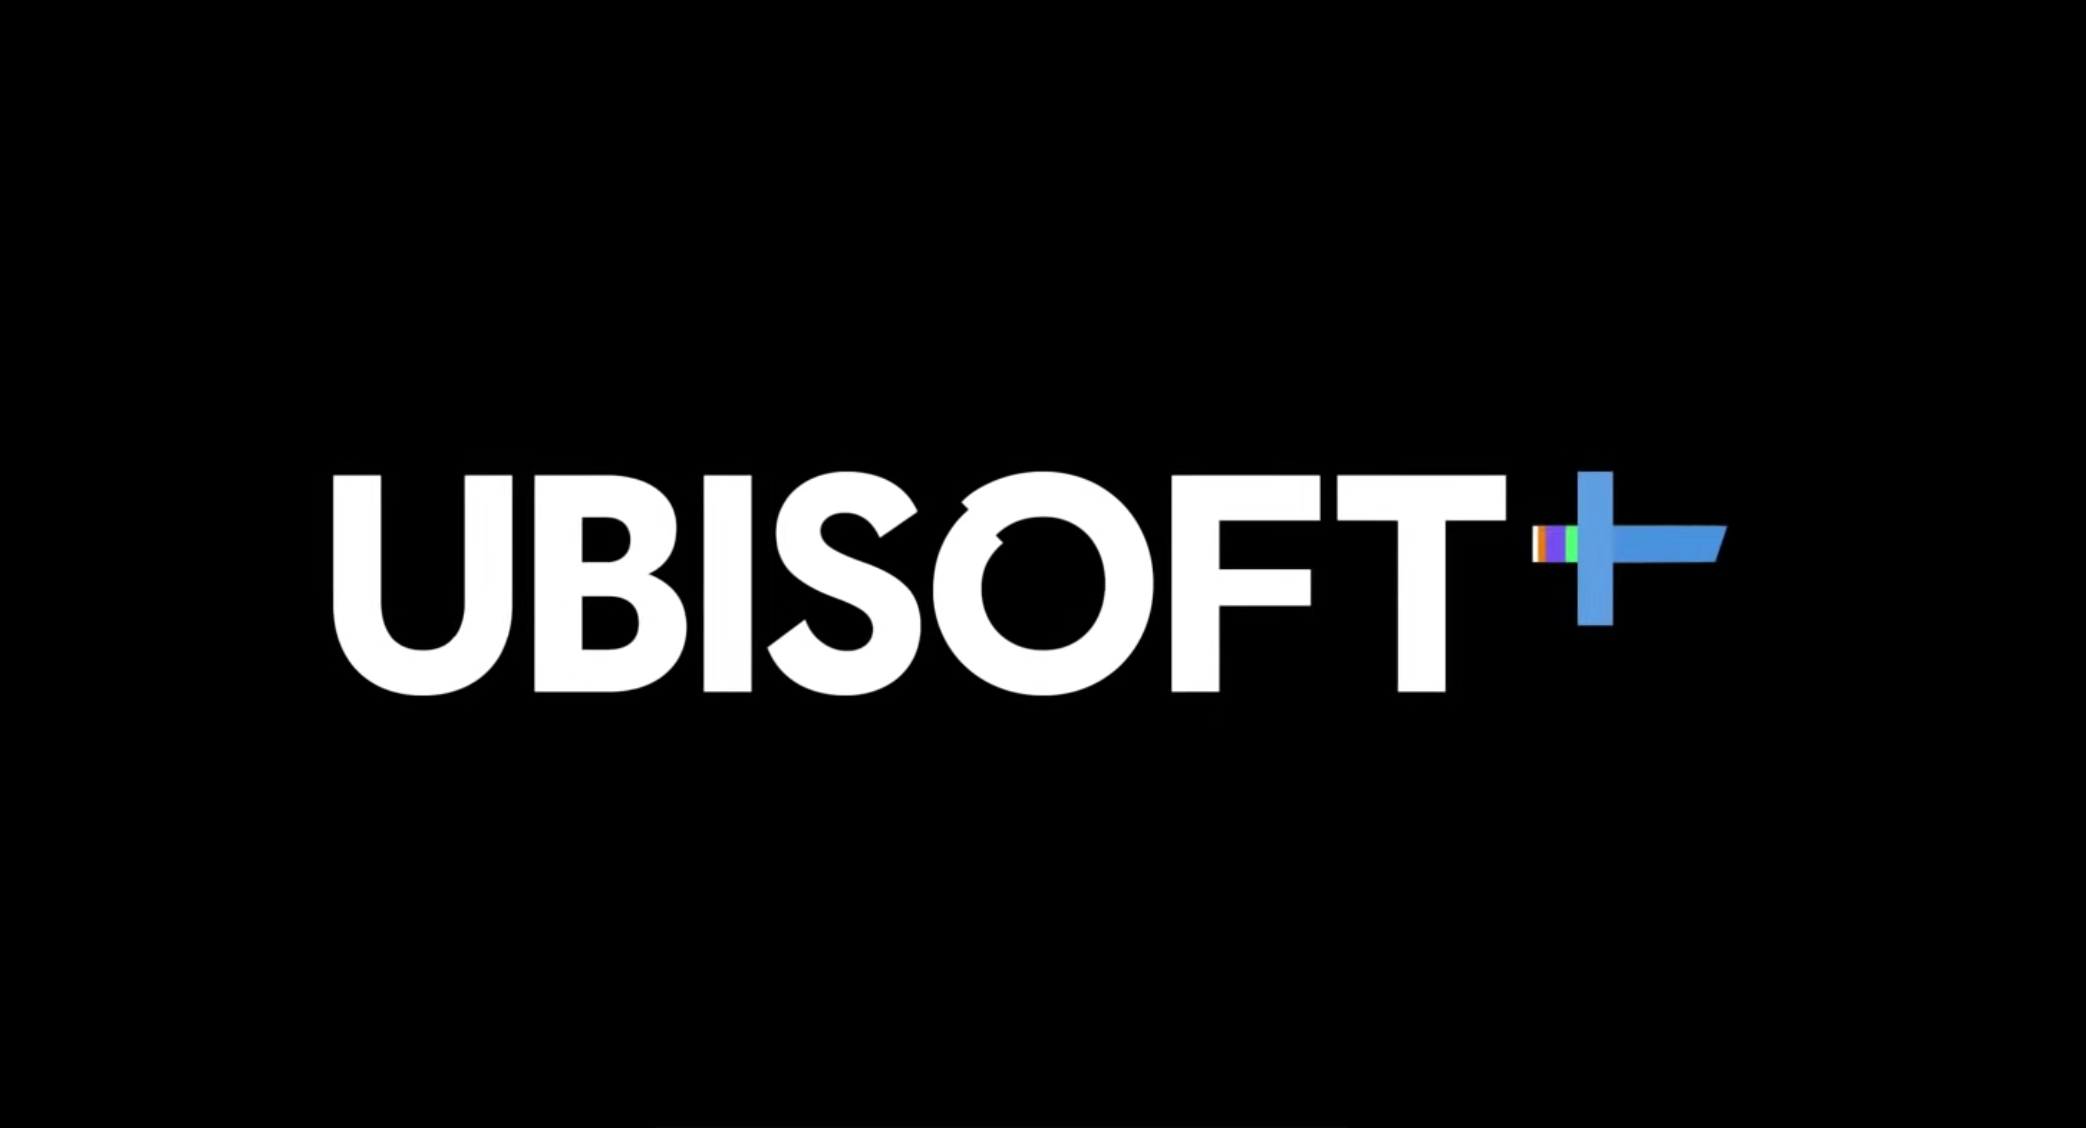 Ubisoft+는 30일 동안 무료로 사용할 수 있습니다.